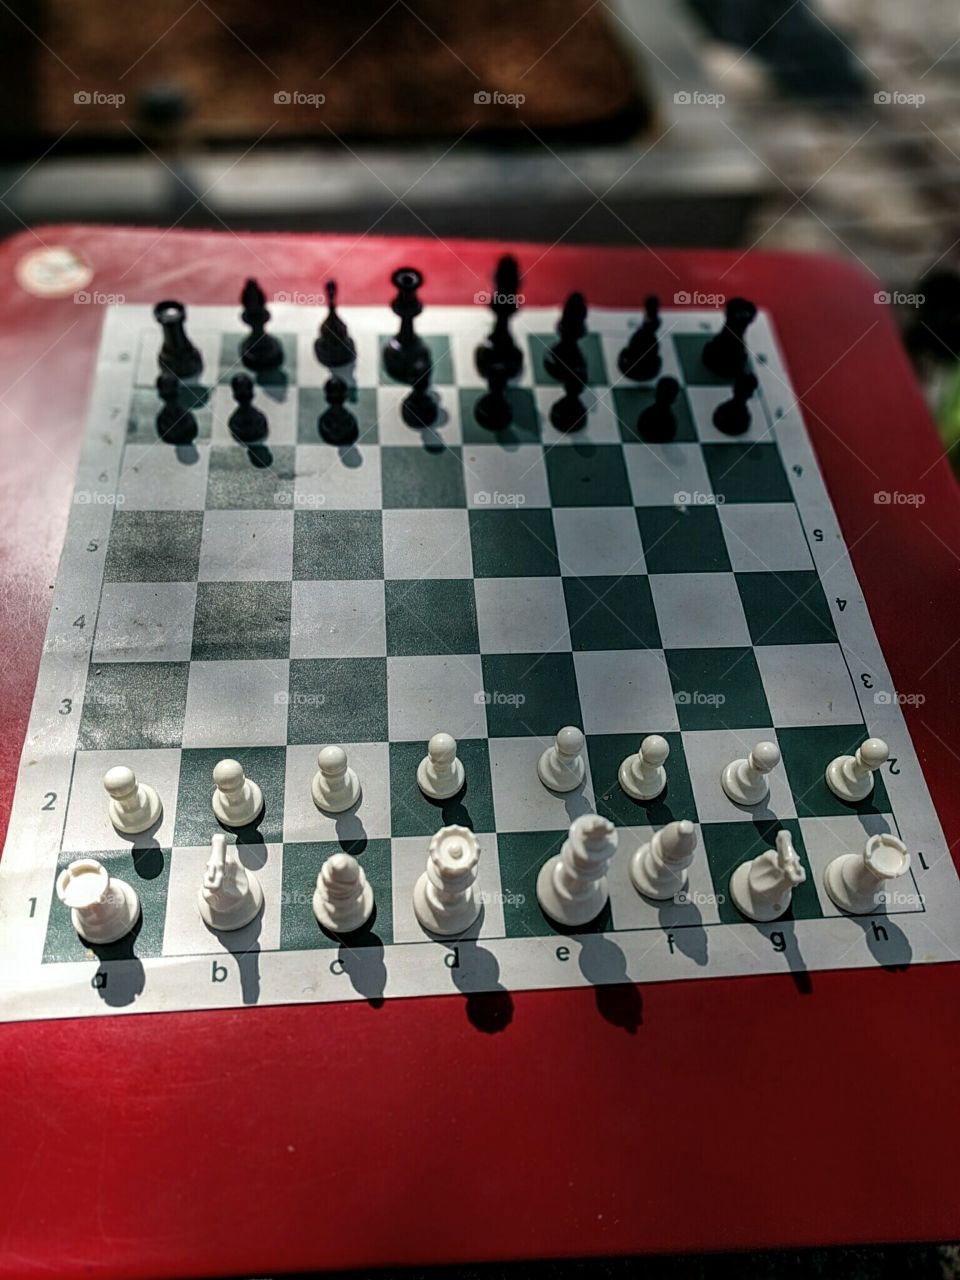 Chess shadows